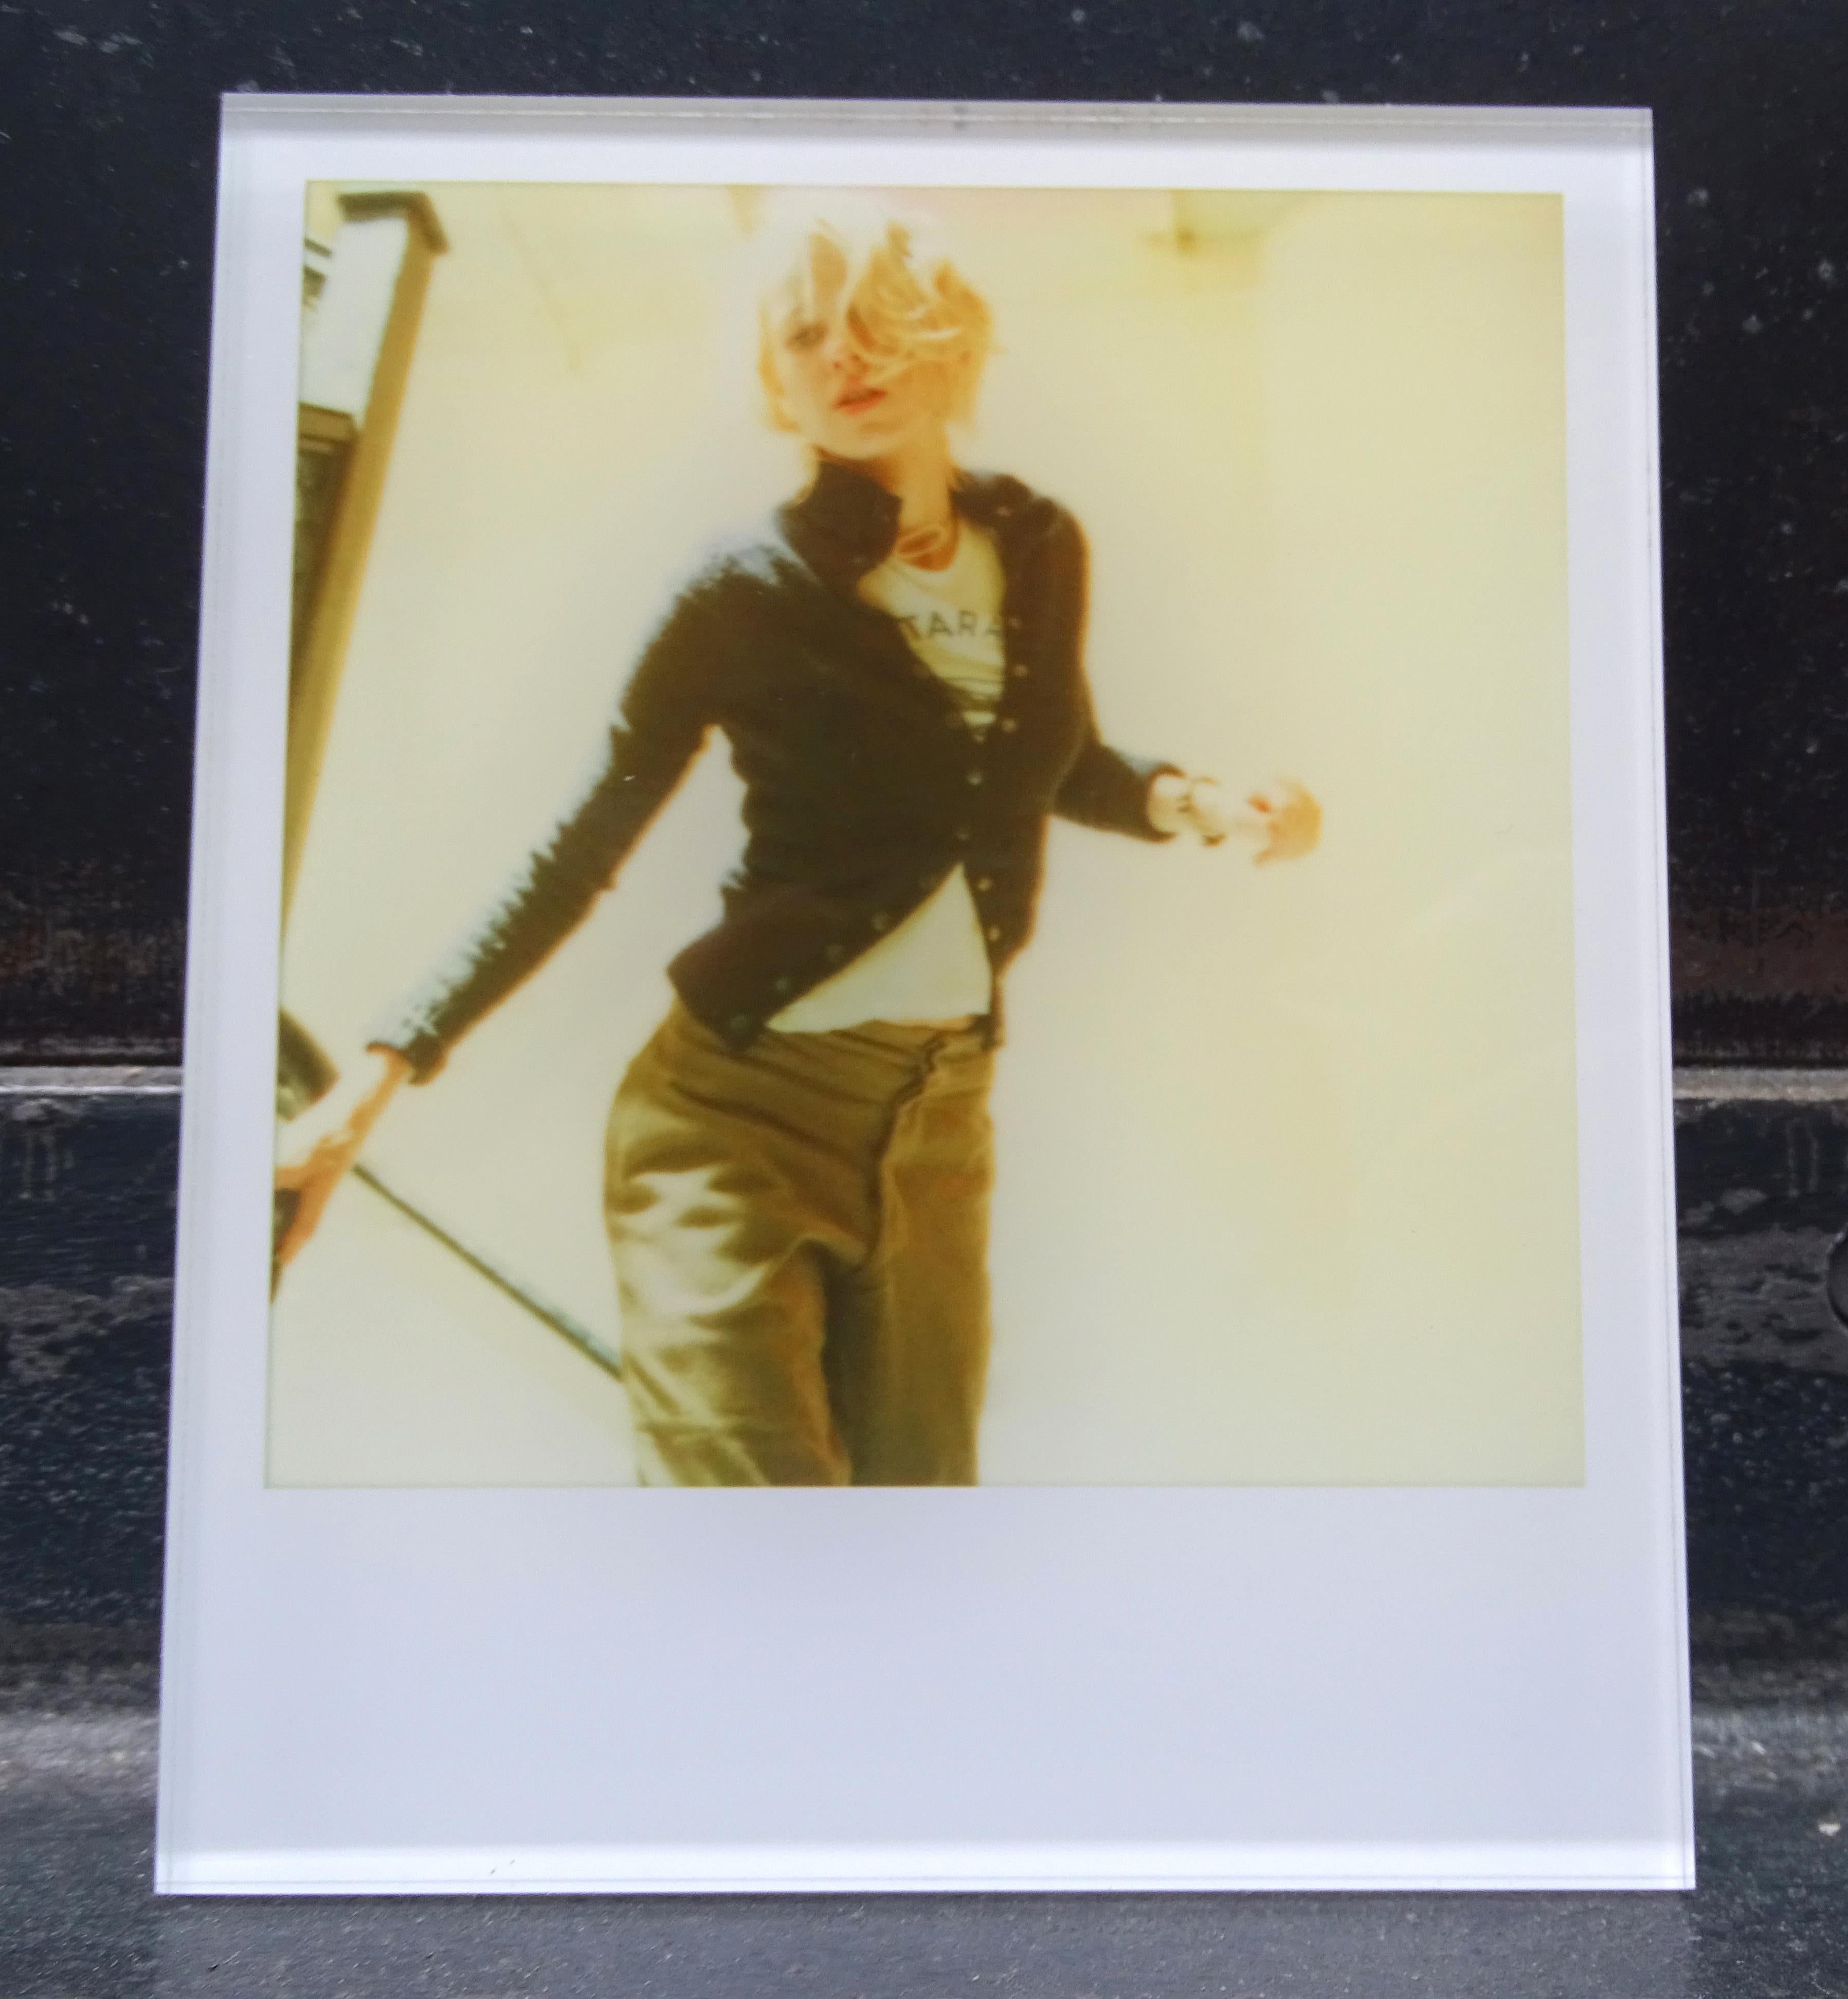 Les Minis de Stefanie Schneider
Lila descendant les escaliers (séjour) - avec Naomi Watts, 2006
signé et marque de signature au verso
Photographies couleur numériques Lambda basées sur le Polaroïd

extrait du film "Stay" de Marc Forster, avec Ewan